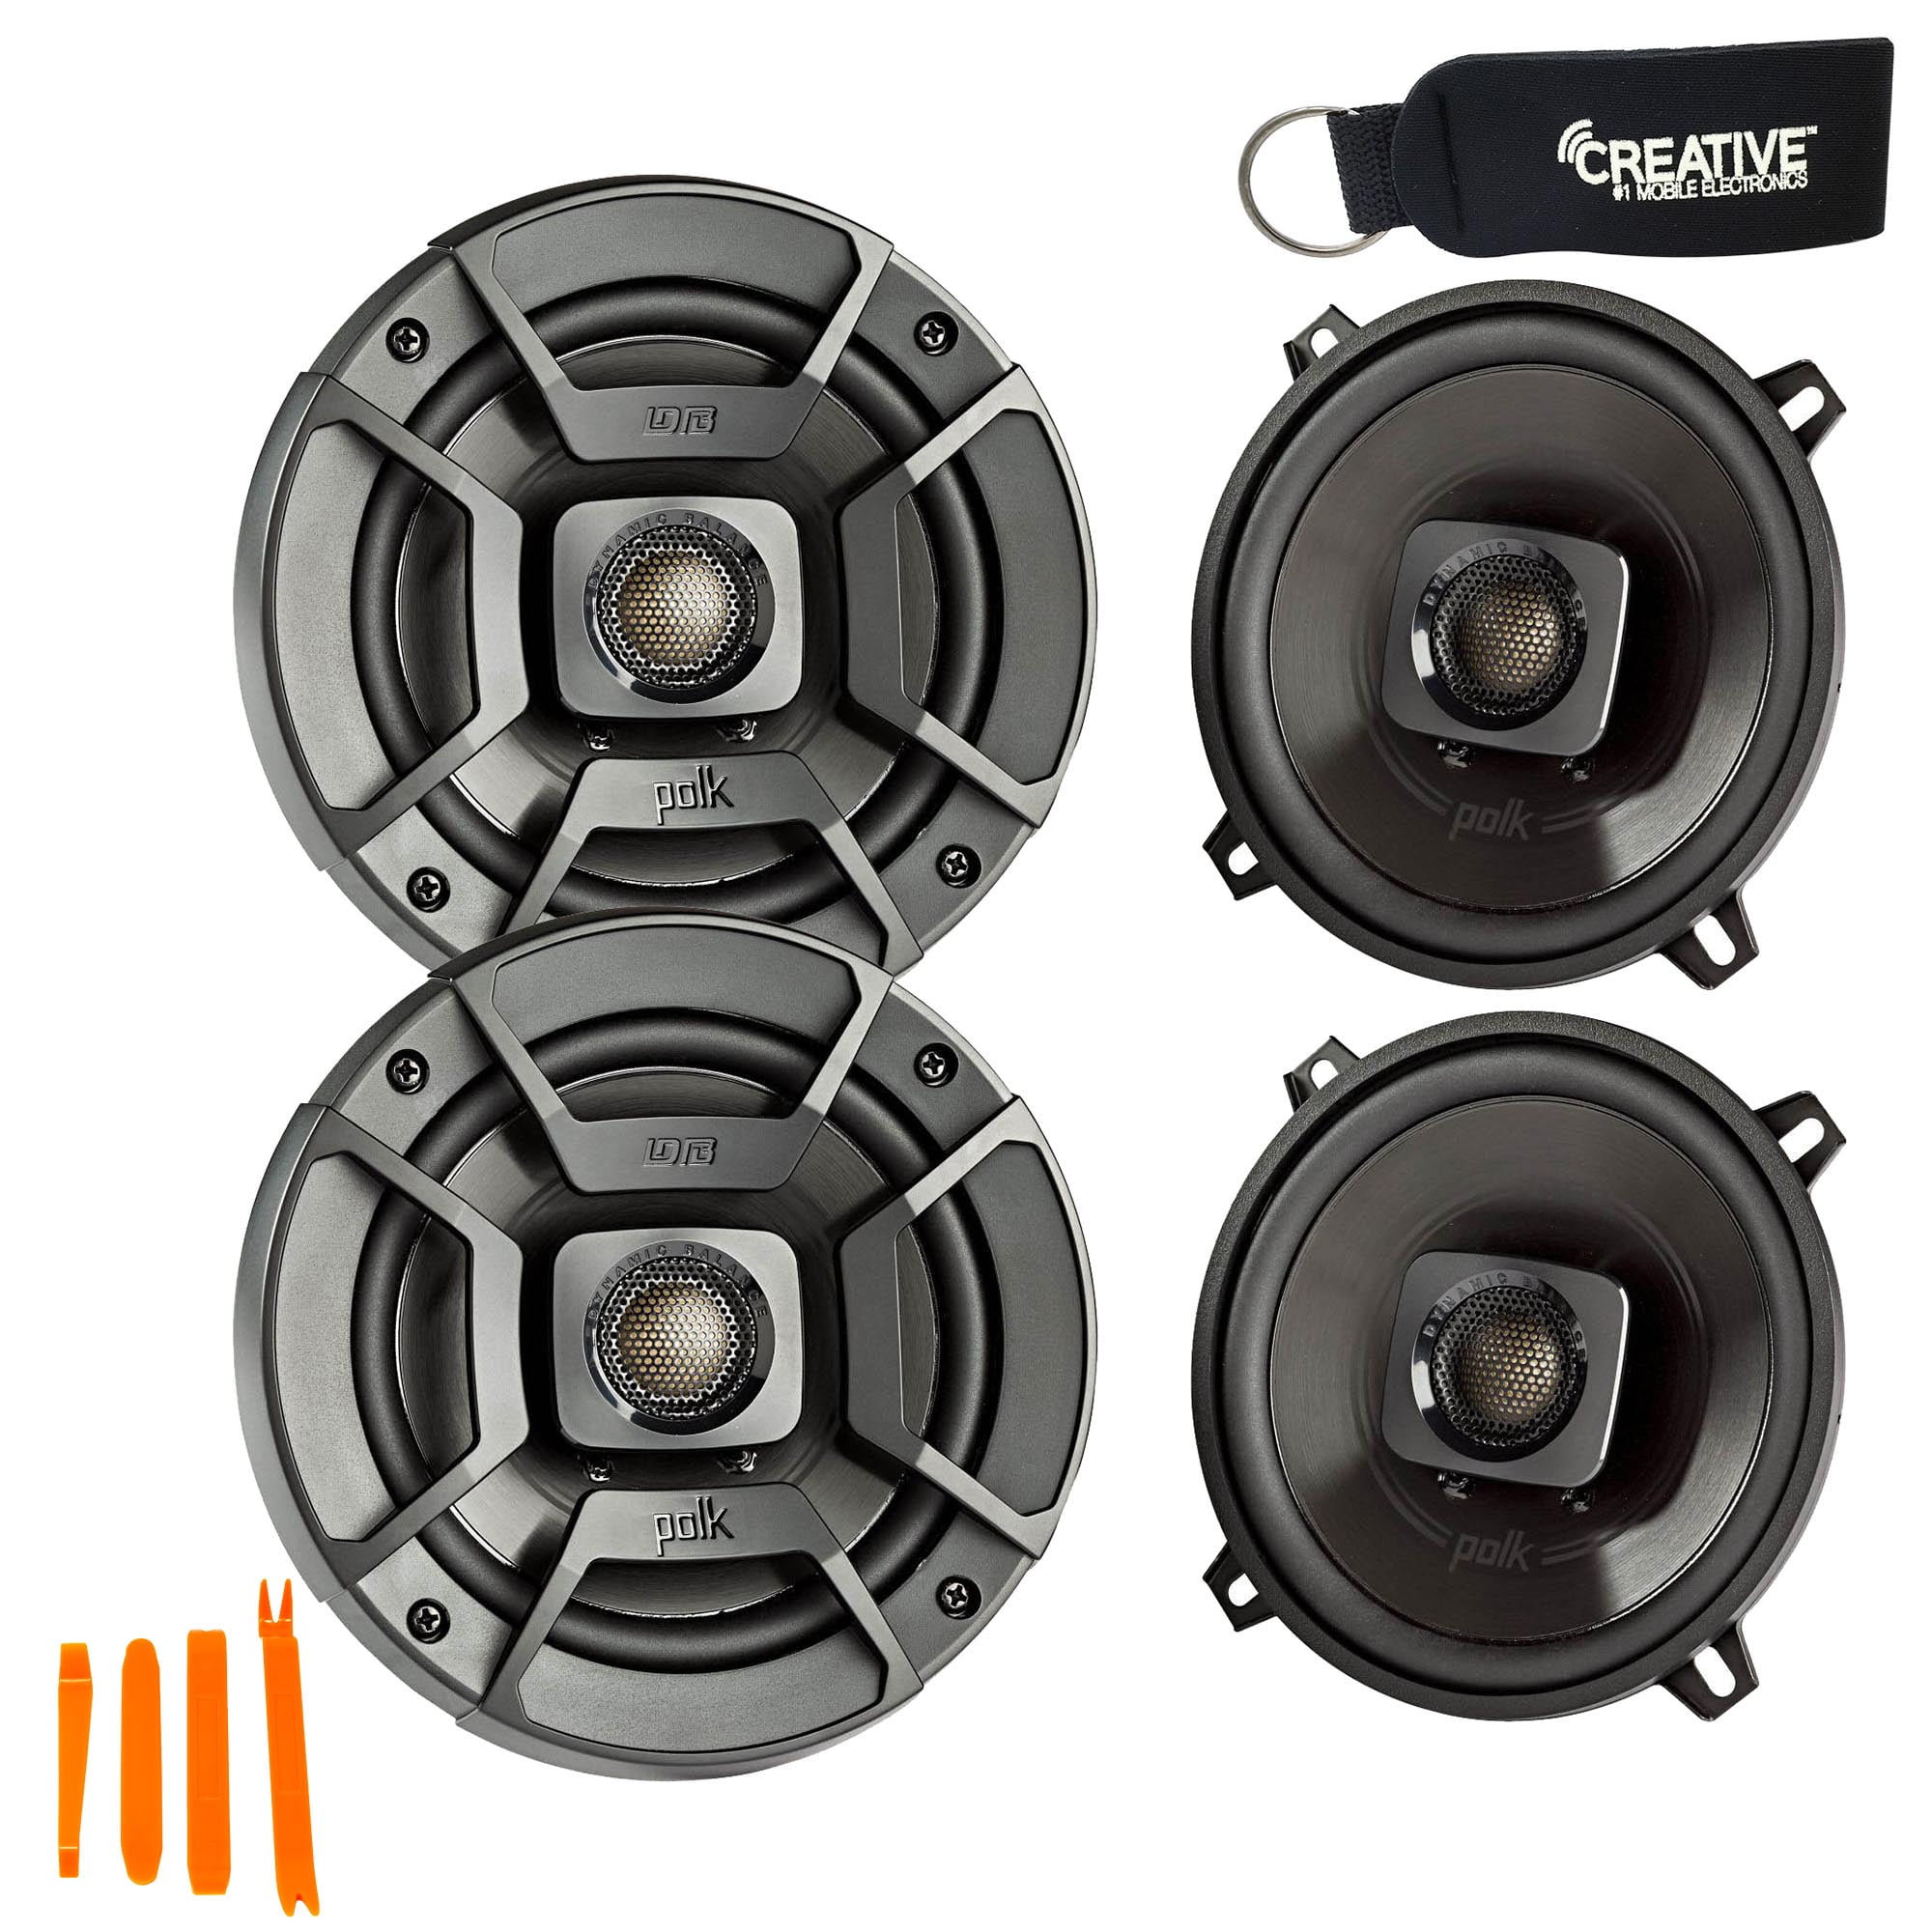 2x New Polk Audio DB522 300W 2-Way Marine 5.25" Coaxial Speakers 